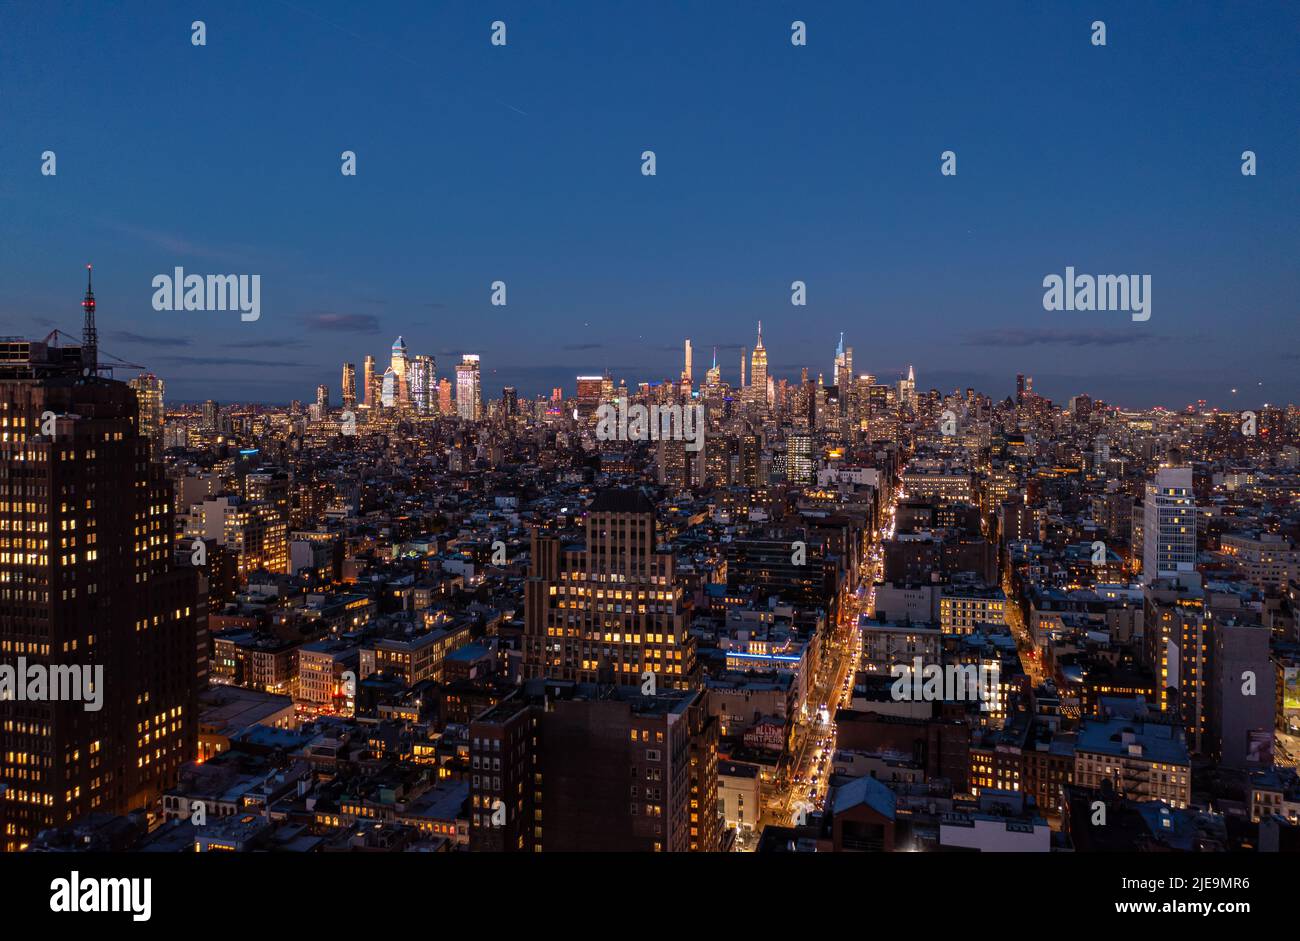 Panoramaaufnahme der Metropole nach Sonnenuntergang. Die Gipfel der Wolkenkratzer in der Innenstadt sind von letzten Sonnenstrahlen erleuchtet. Manhattan, New York City, USA Stockfoto